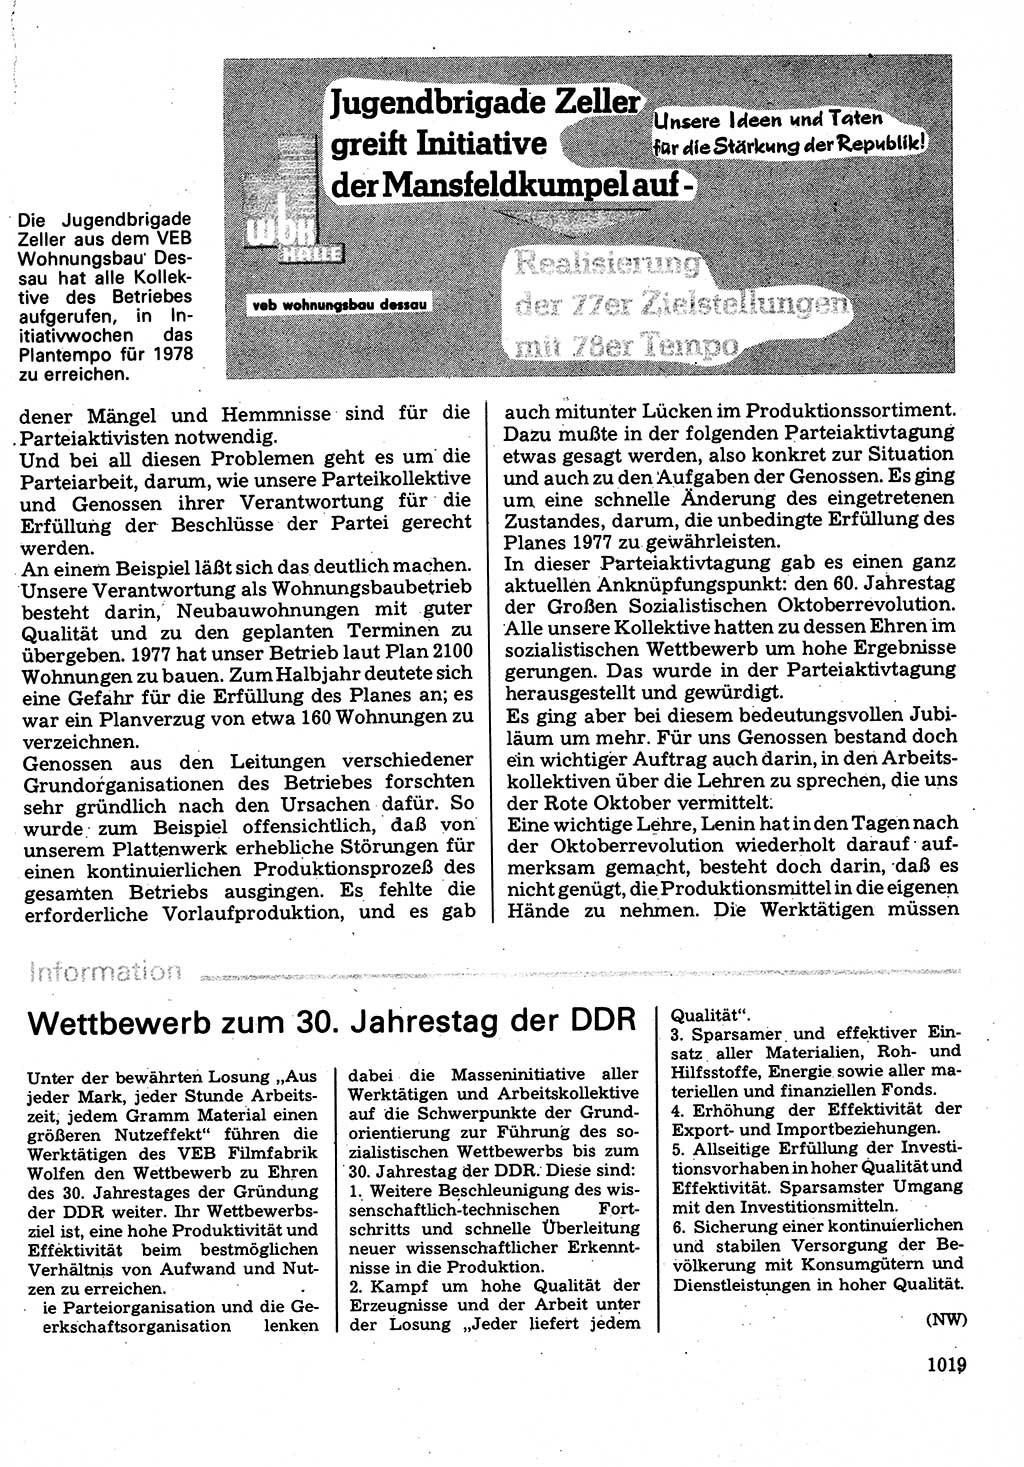 Neuer Weg (NW), Organ des Zentralkomitees (ZK) der SED (Sozialistische Einheitspartei Deutschlands) für Fragen des Parteilebens, 32. Jahrgang [Deutsche Demokratische Republik (DDR)] 1977, Seite 1019 (NW ZK SED DDR 1977, S. 1019)